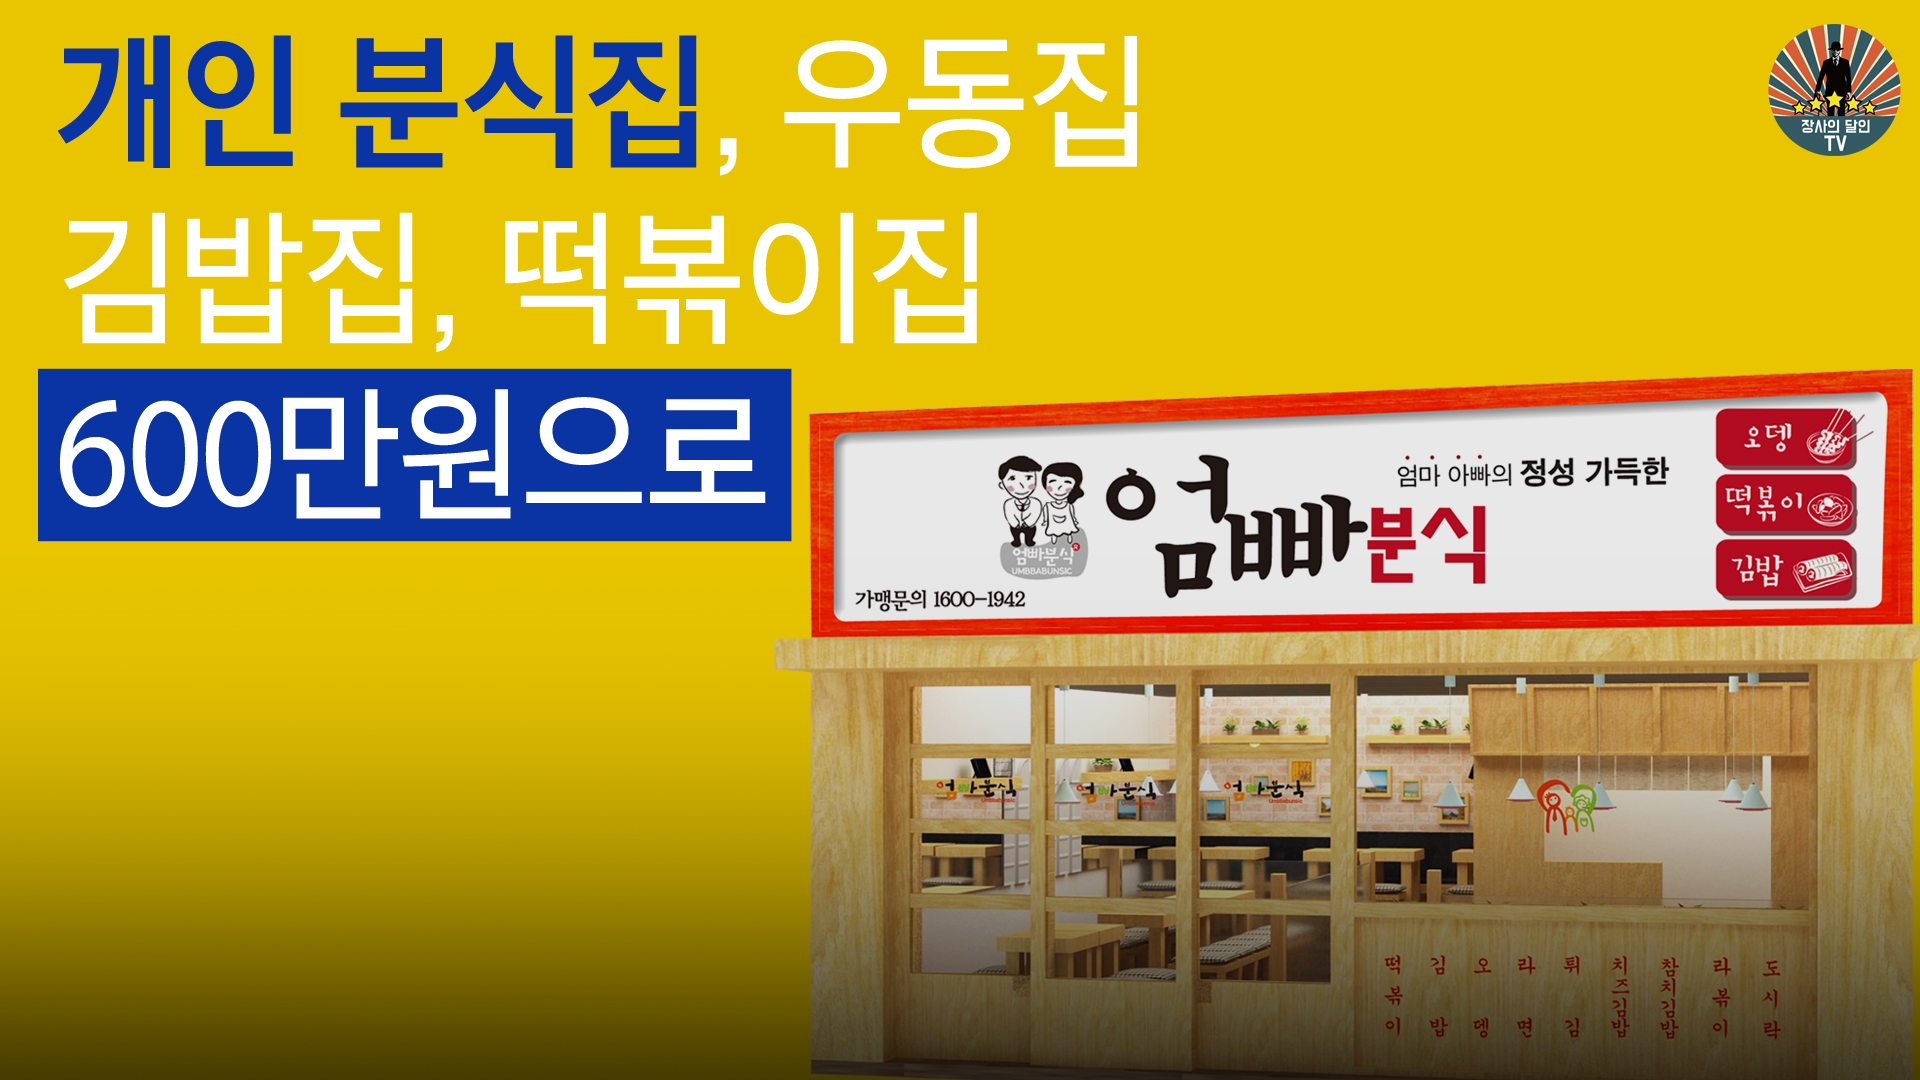 개인 분식집, 우동집, 김밥집, 떡볶이집 600만원으로 창업하기